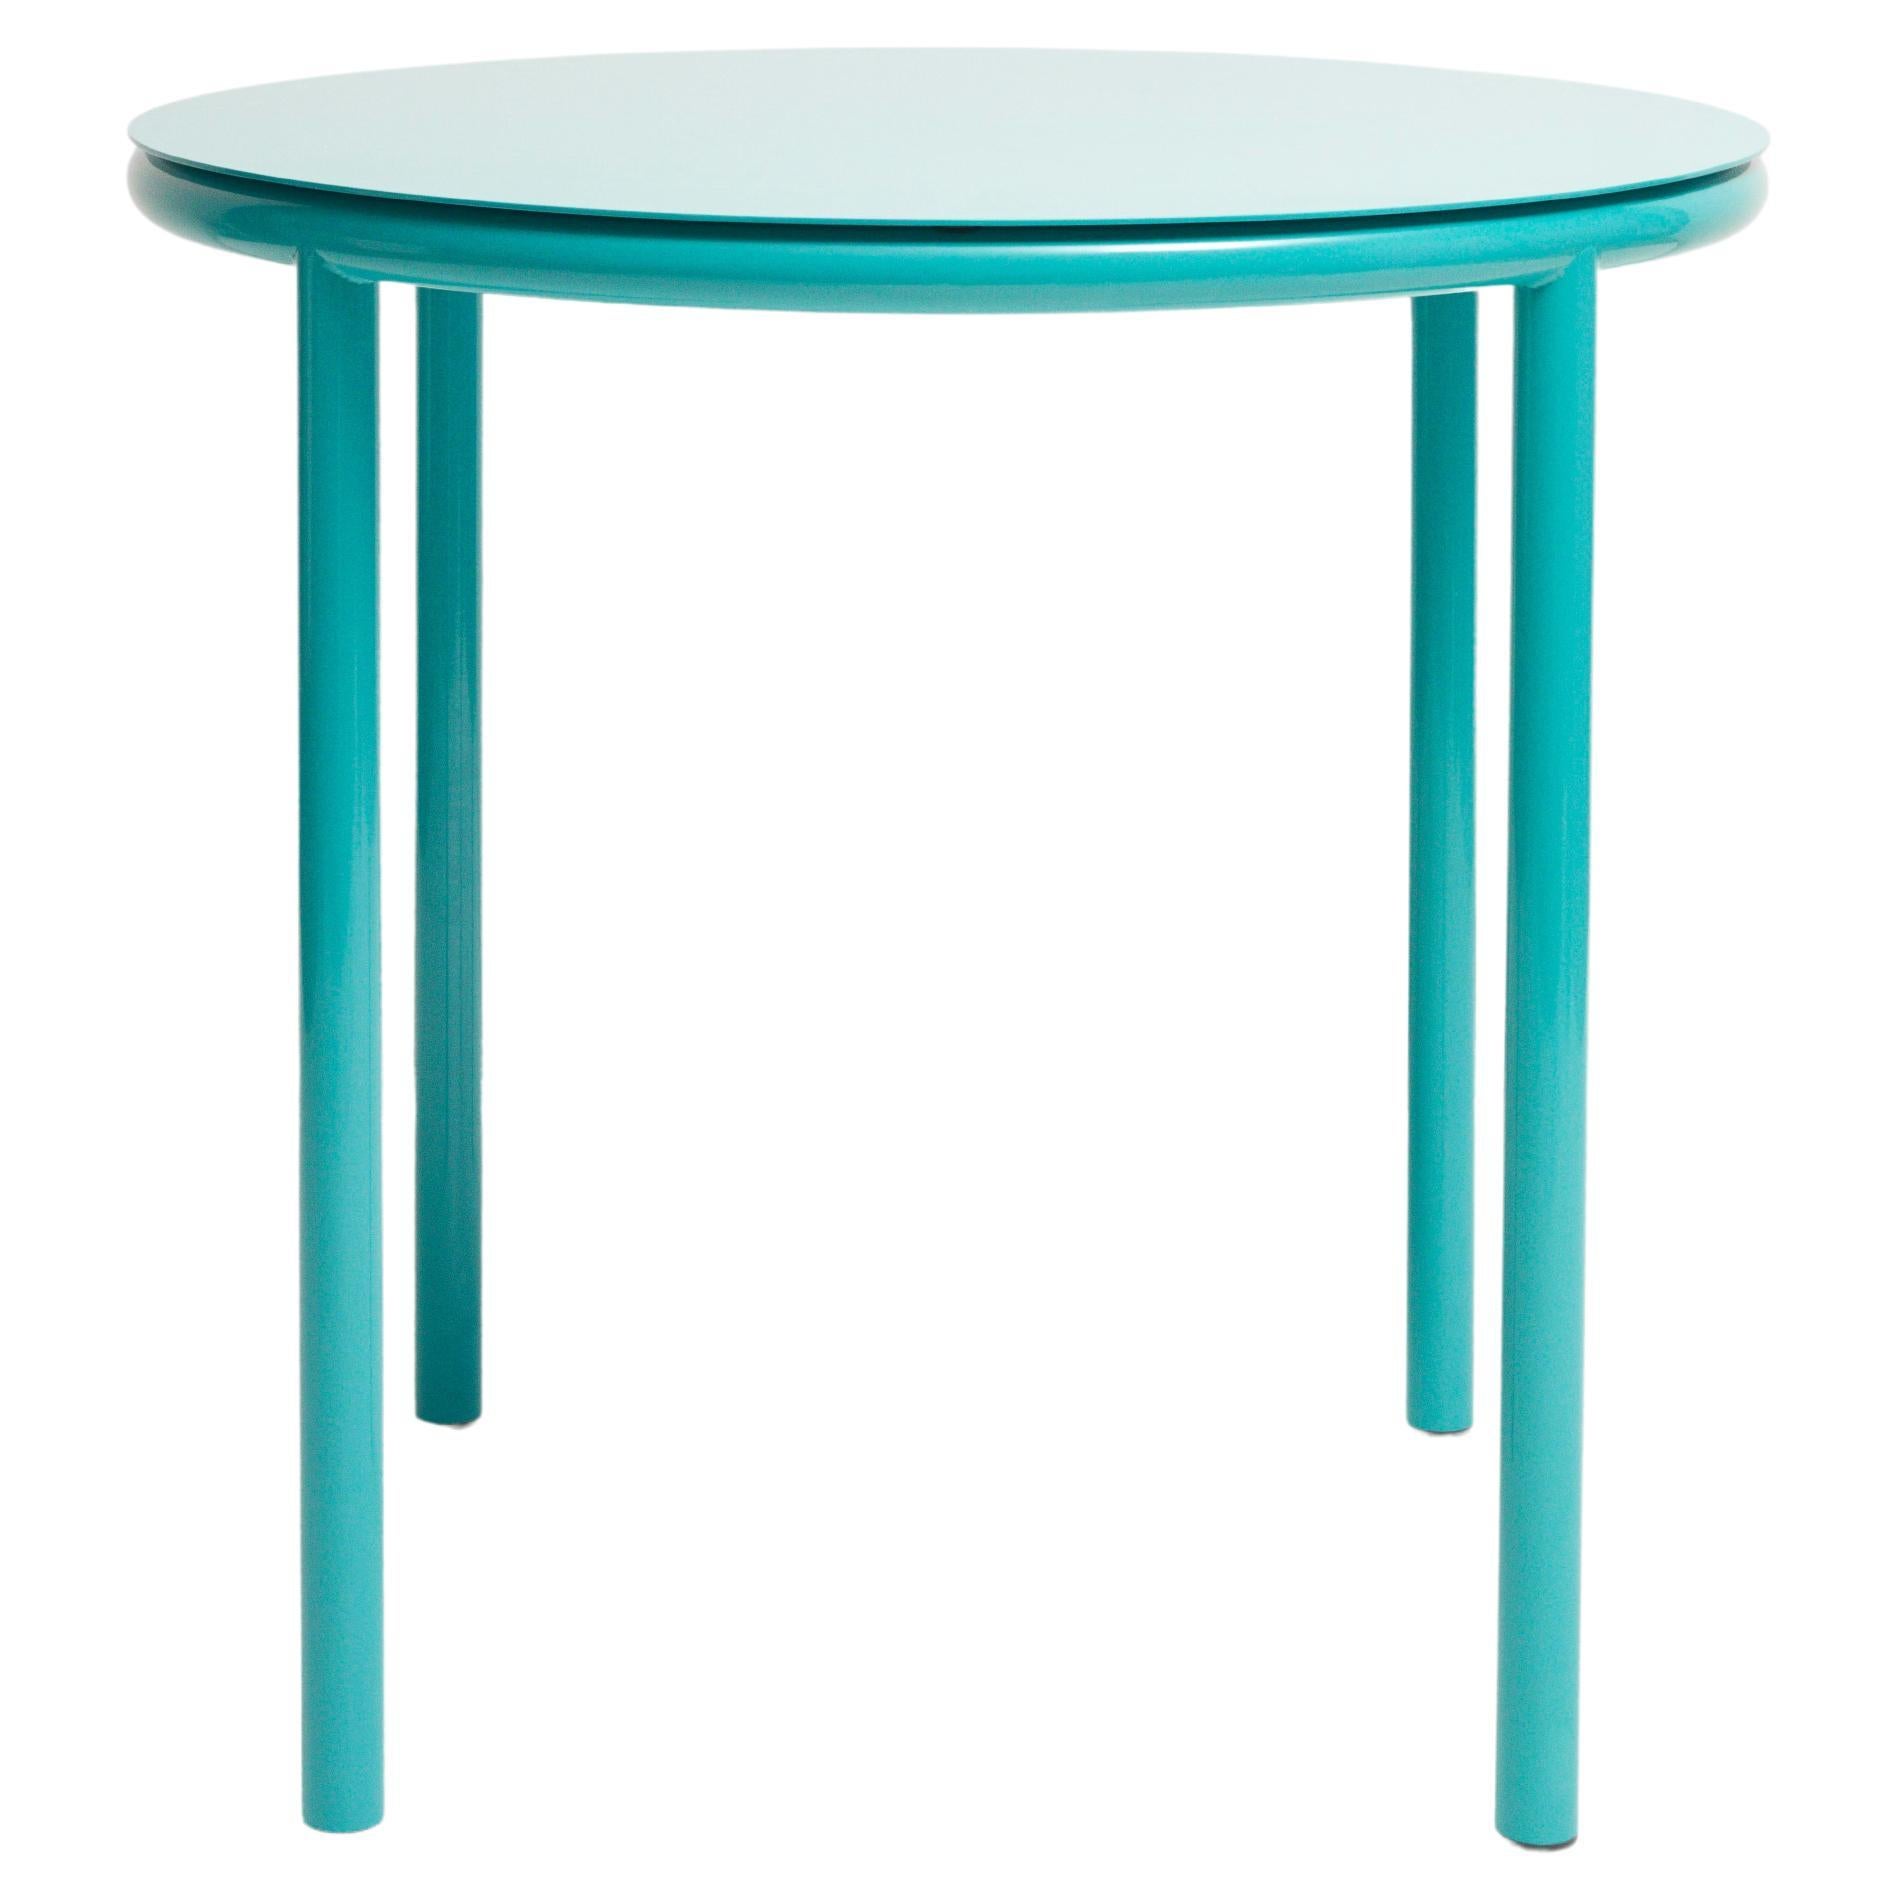 Table Ring - Mimimal - Table de salle à manger / table basse en métal tubulaire coloré poudré